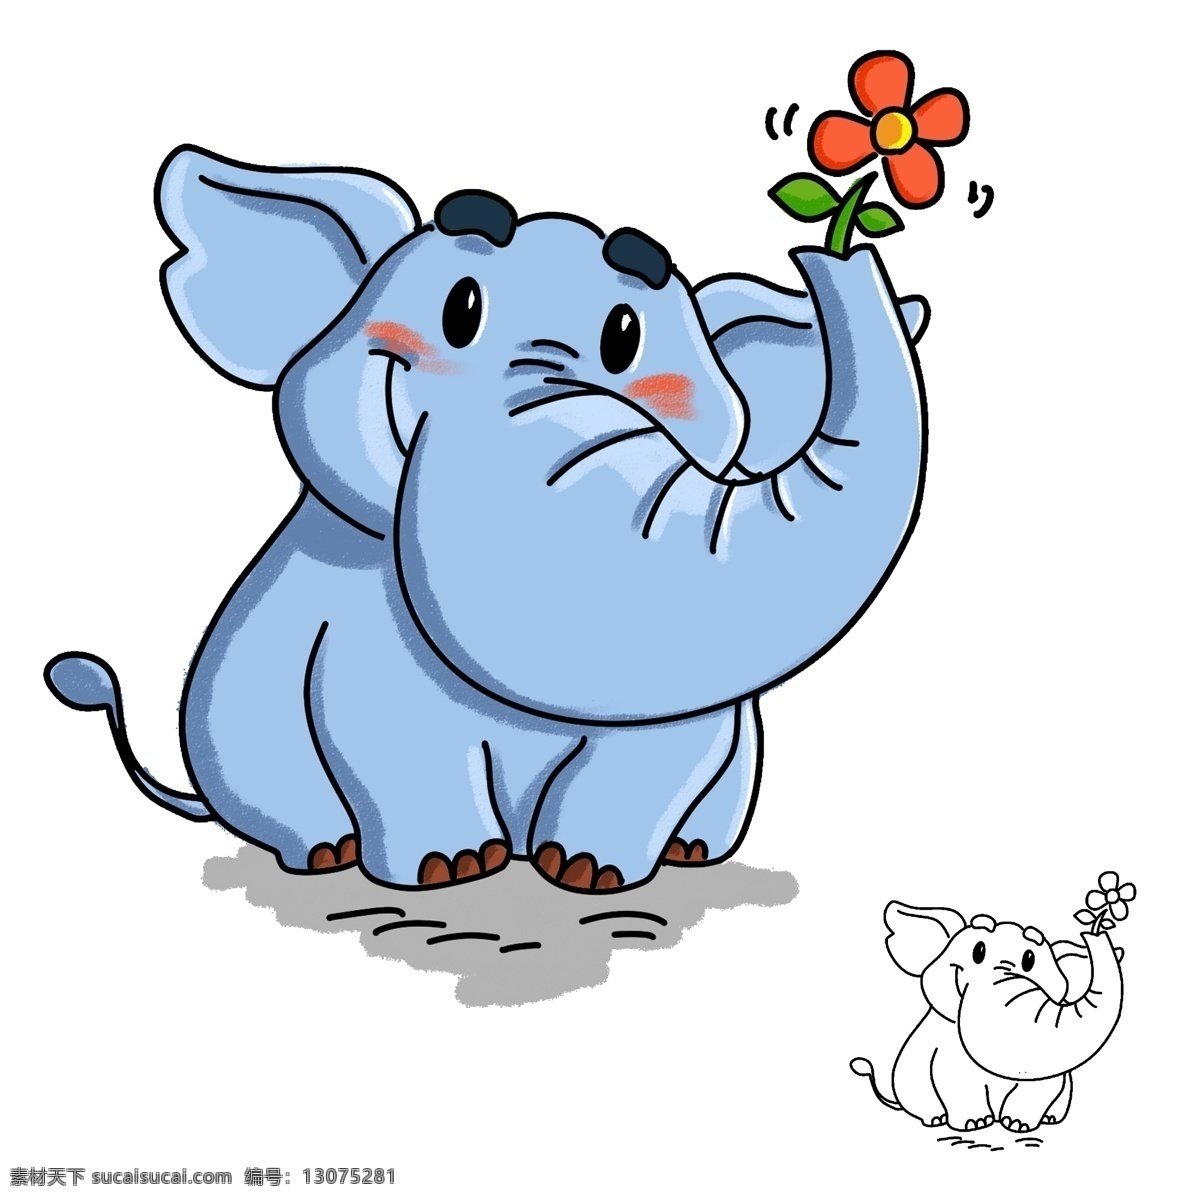 胖胖的小象 简笔画插画 大象 小象 简笔画 插画 插图 蓝色的象 胖胖的大象 动物